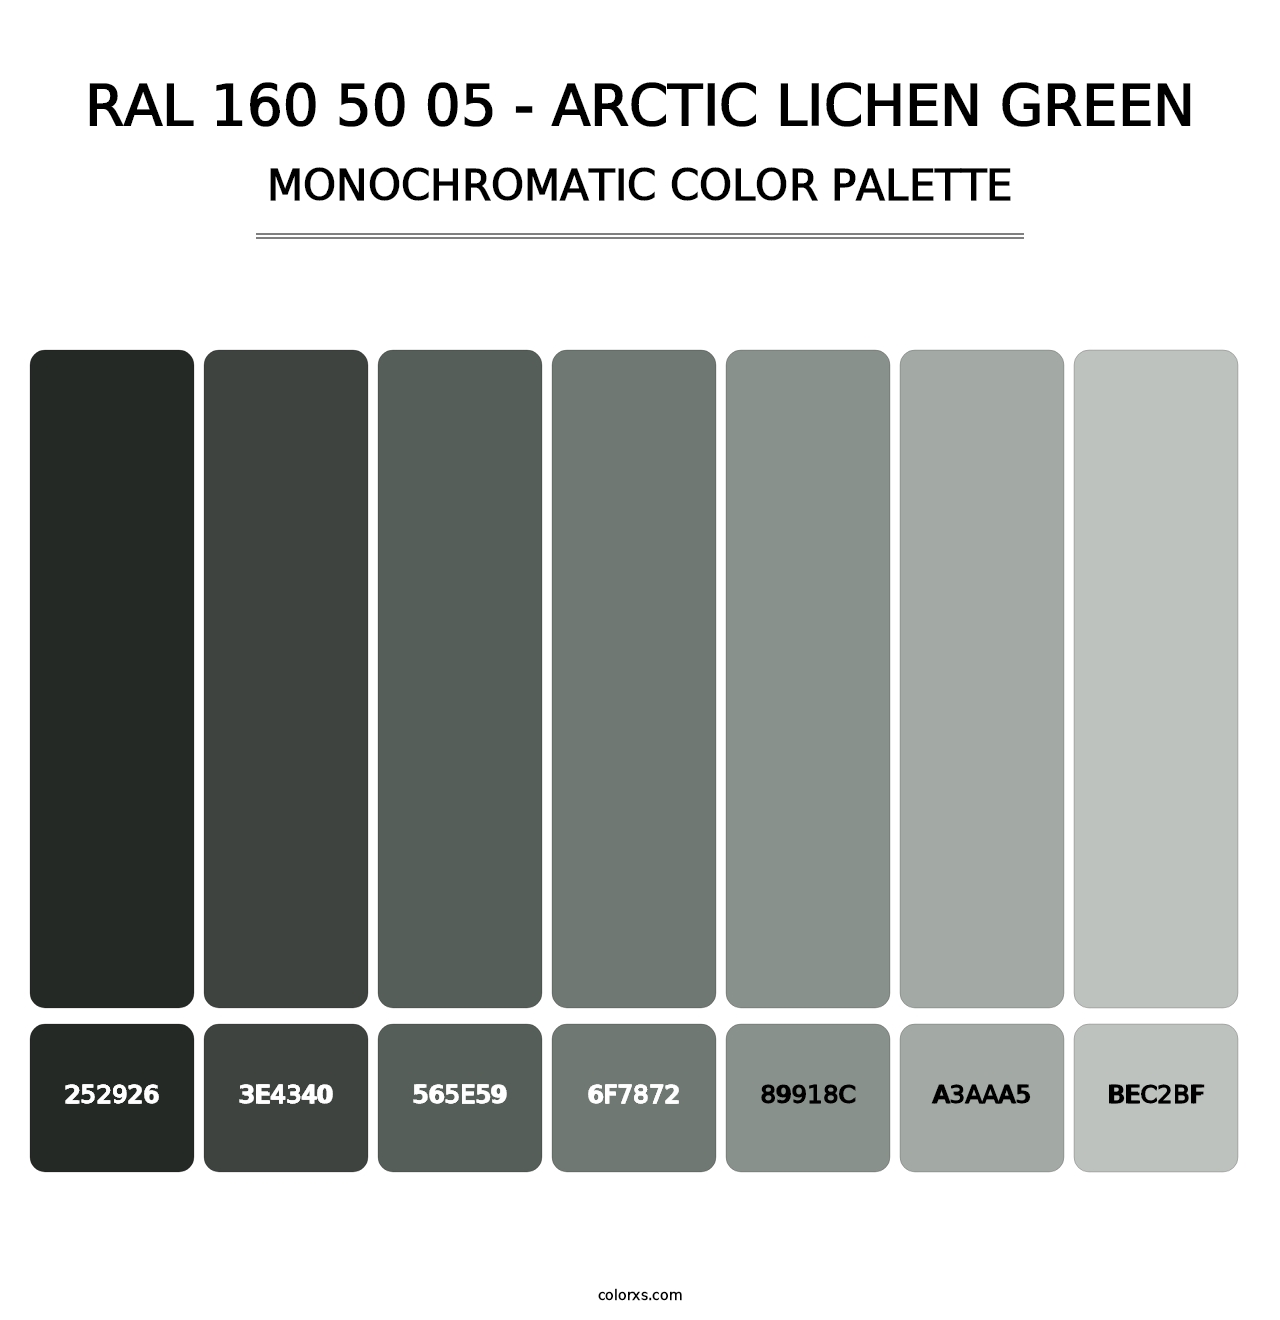 RAL 160 50 05 - Arctic Lichen Green - Monochromatic Color Palette